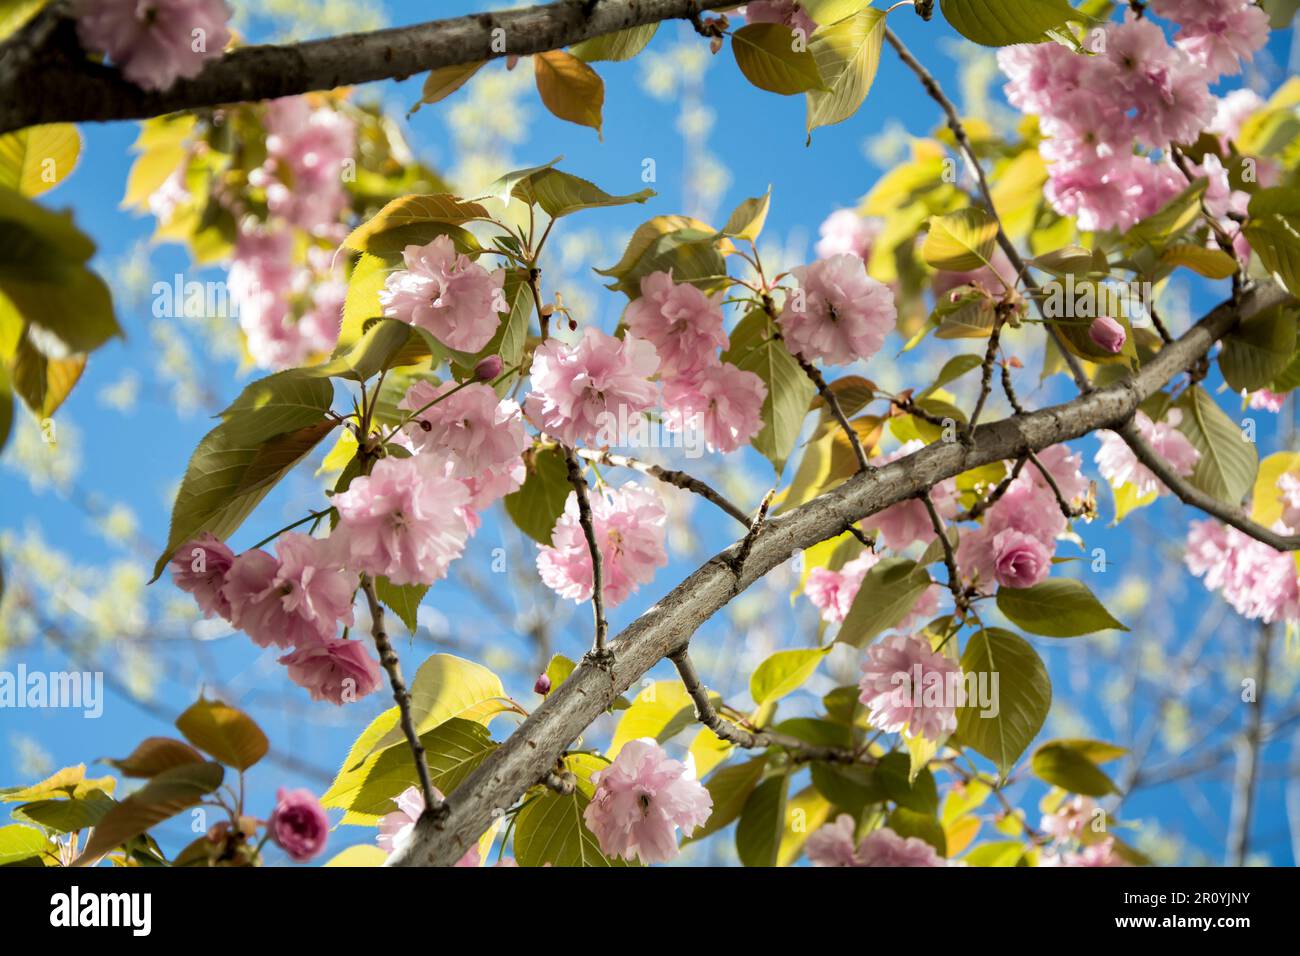 Gros plan d'une branche de cerise japonaise (Prunus Kanzan) lors d'une journée ensoleillée au printemps avec beaucoup de belles fleurs roses. Image horizontale avec sélection Banque D'Images